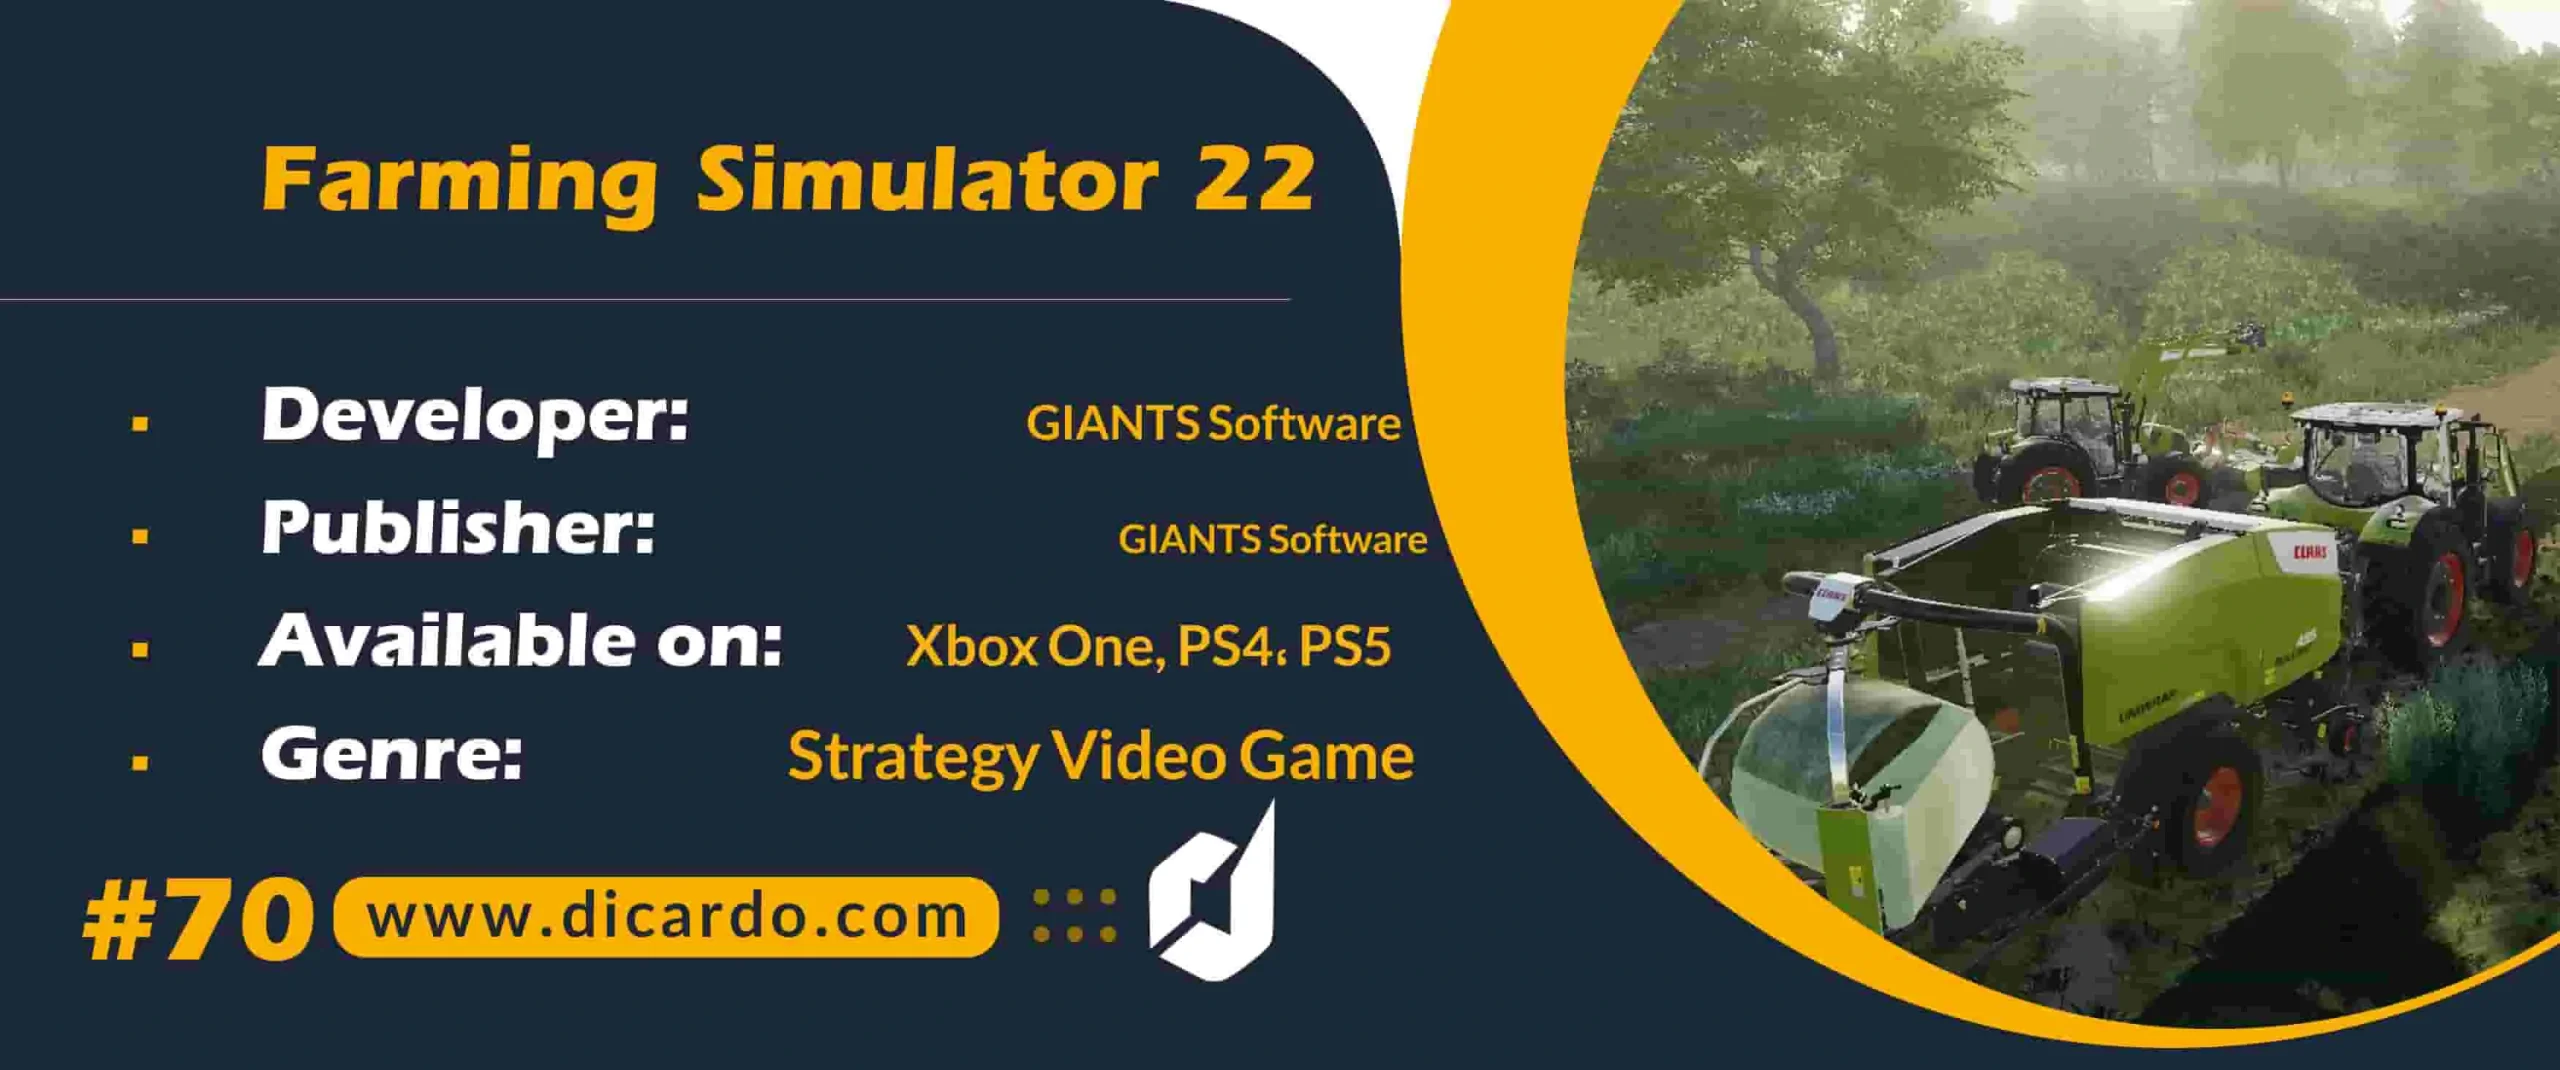 #70 فارمینگ سیمولیشر 2022 Farming Simulator 22 از بهترین بازیهای کامپیوتری در نقش یک کشاورز مدرن و خلاق